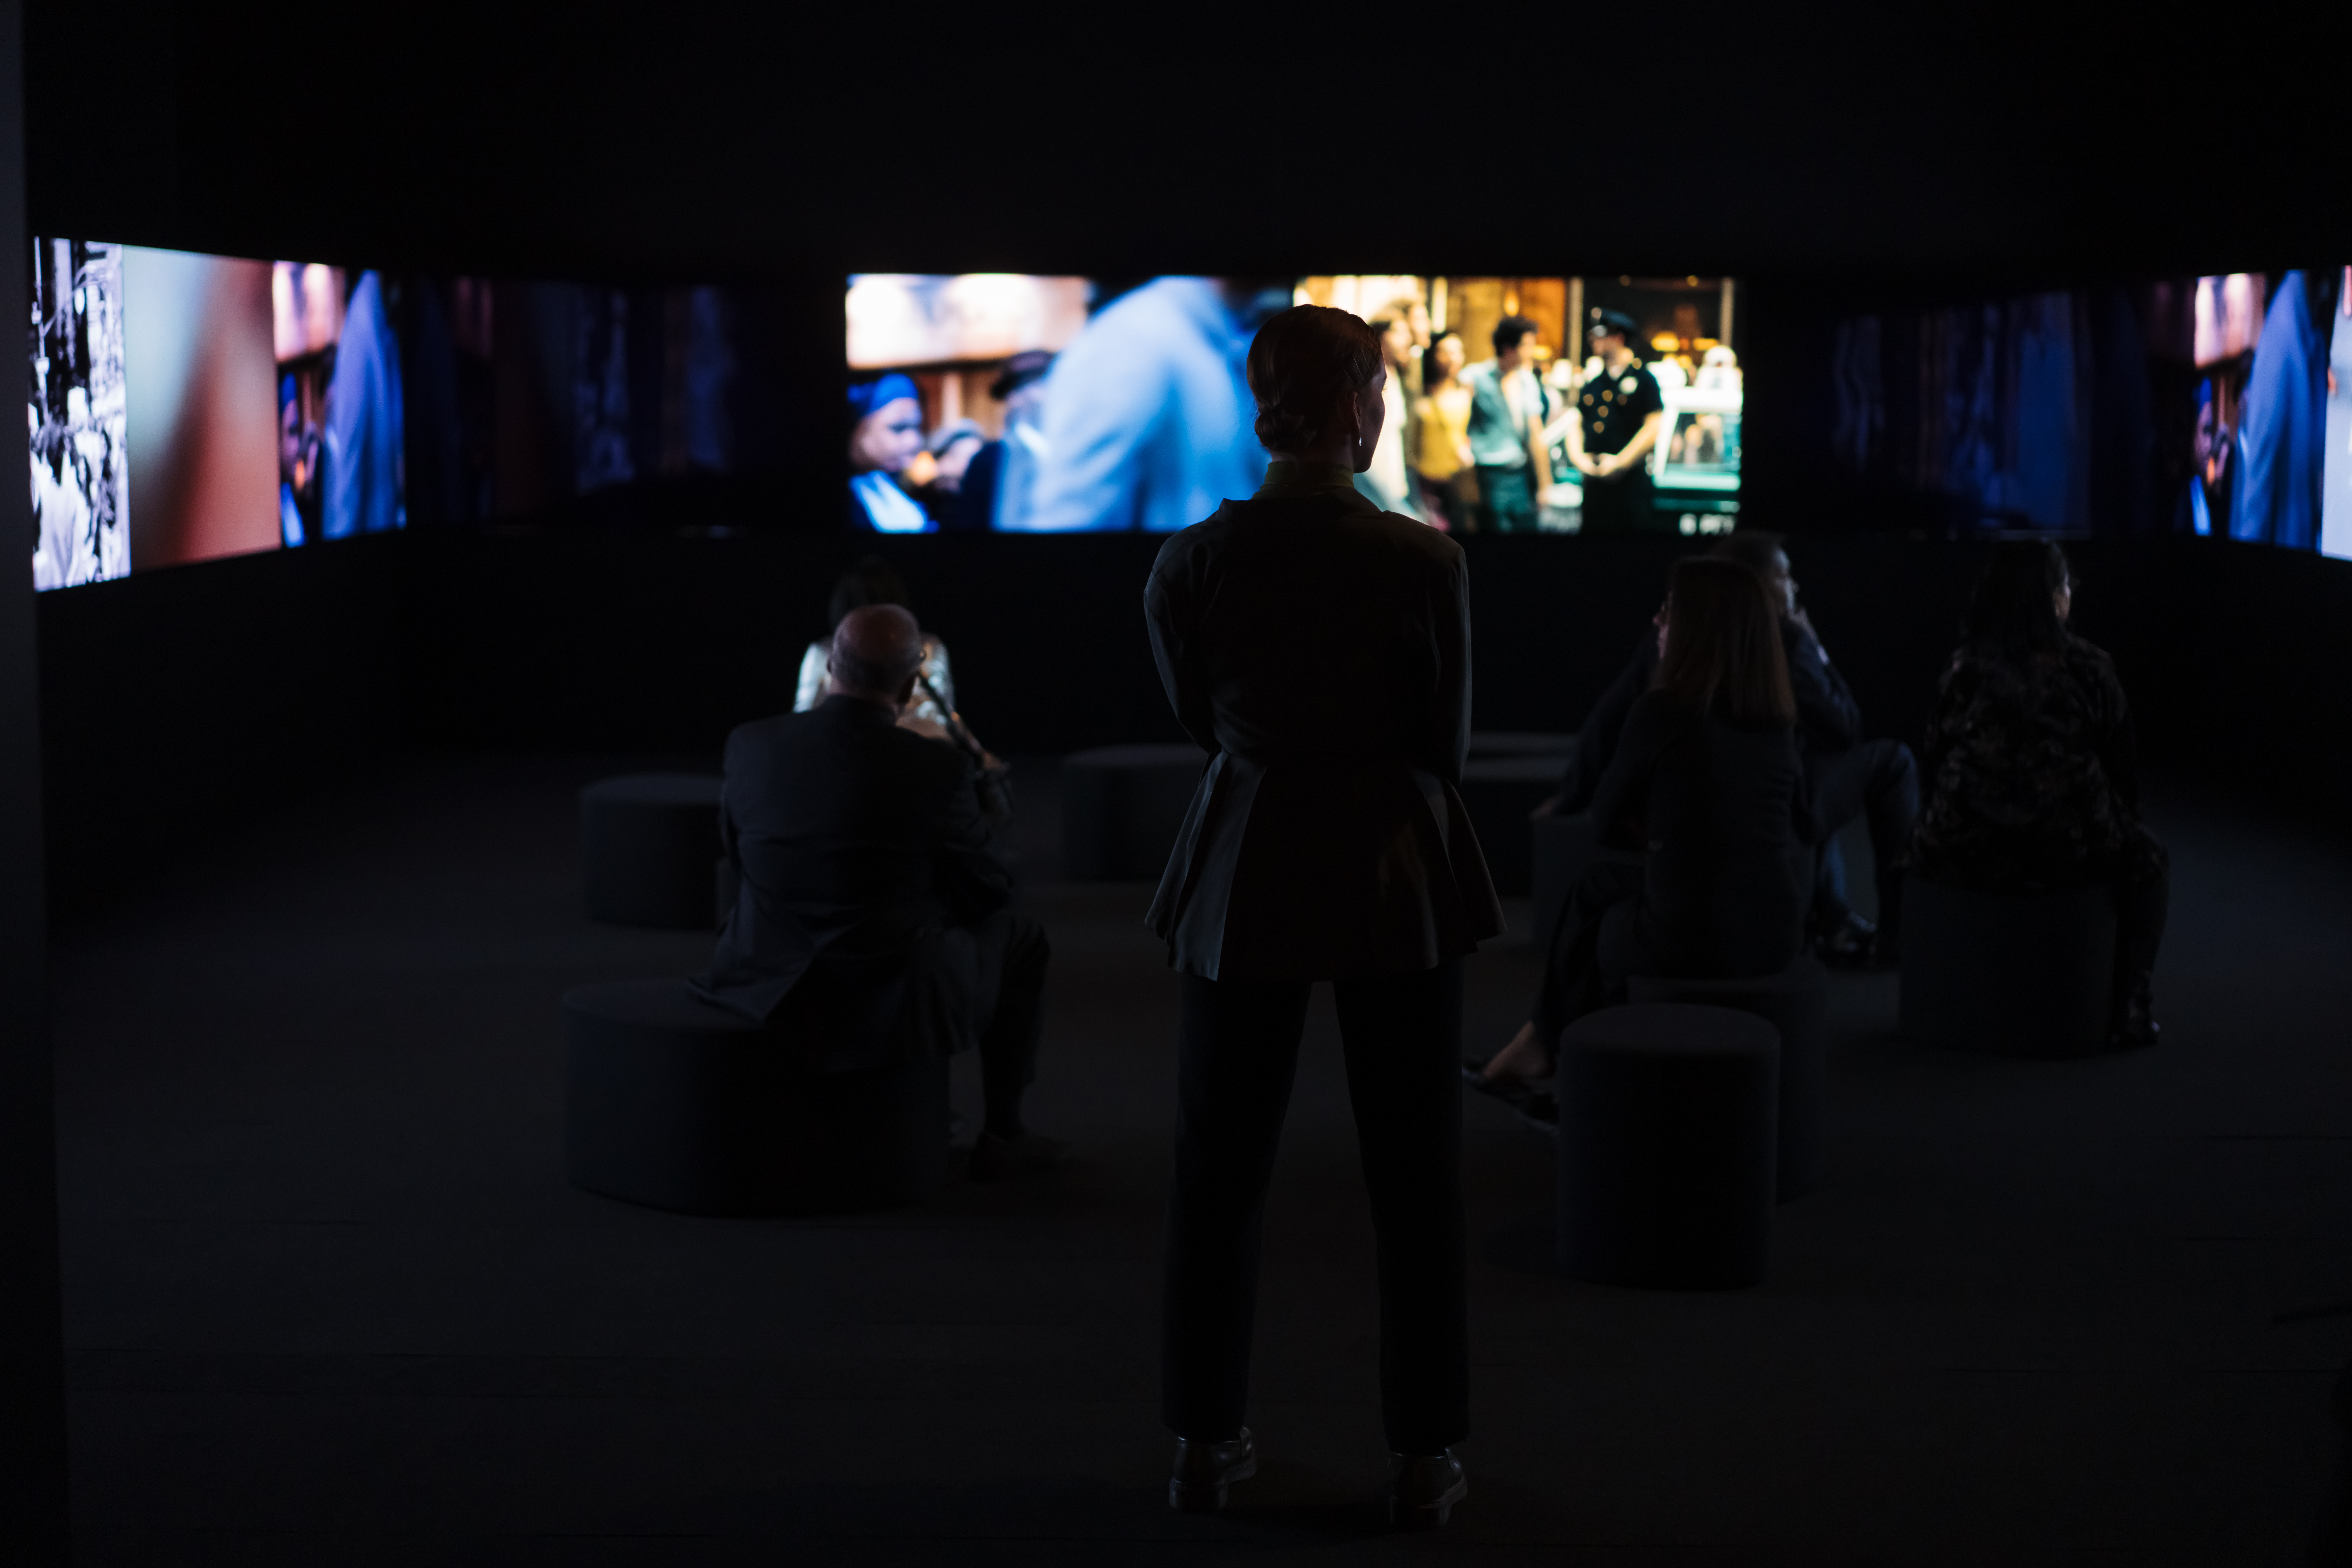 La silhouette d’une femme debout devant plusieurs écrans montrant des images floues de films.